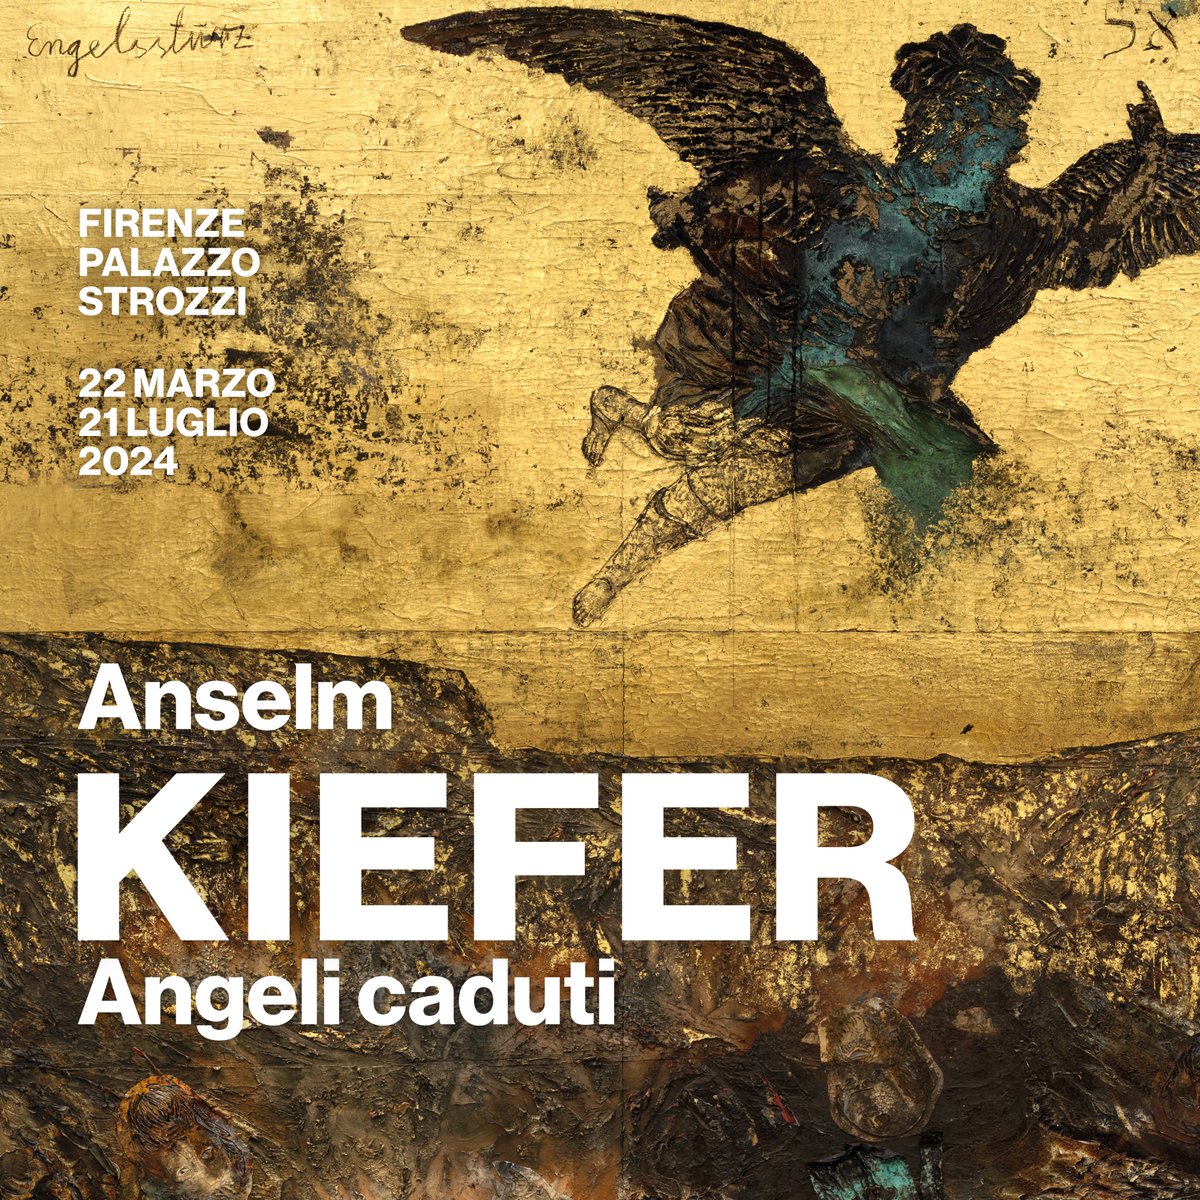 Dal 22 marzo al 21 luglio 2024 Fondazione Palazzo Strozzi presenta #AnselmKiefer #AngeliCaduti una mostra ideata e realizzata insieme a uno dei più importanti artisti tra XX e XXI secolo, Anselm Kiefer.